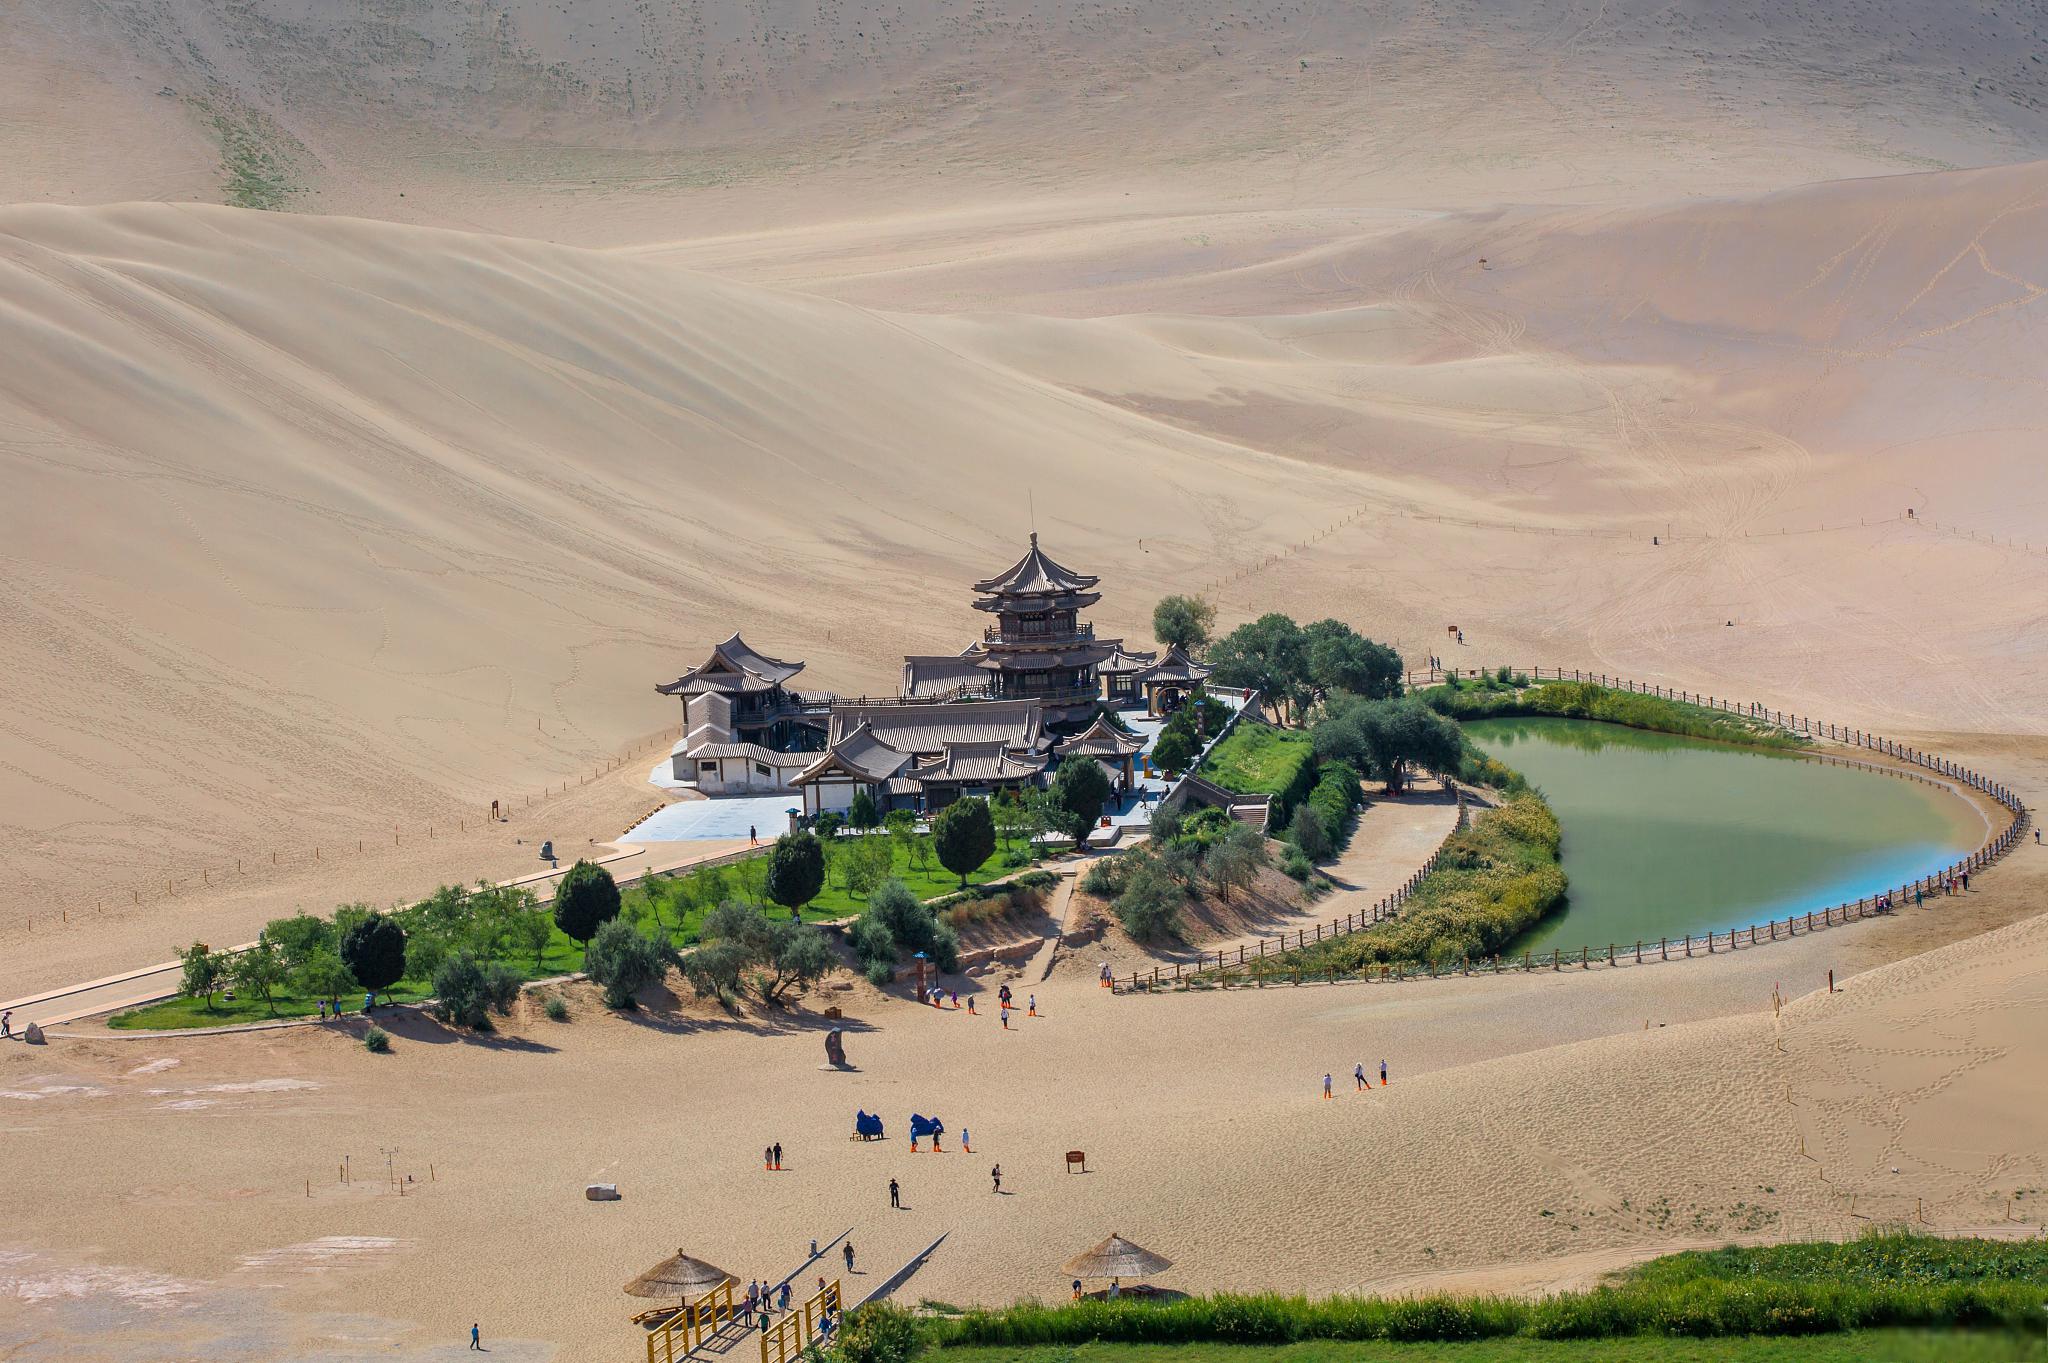 敦煌月牙泉,沙漠中的明珠 敦煌月牙泉,位于中国甘肃省敦煌市莫高窟